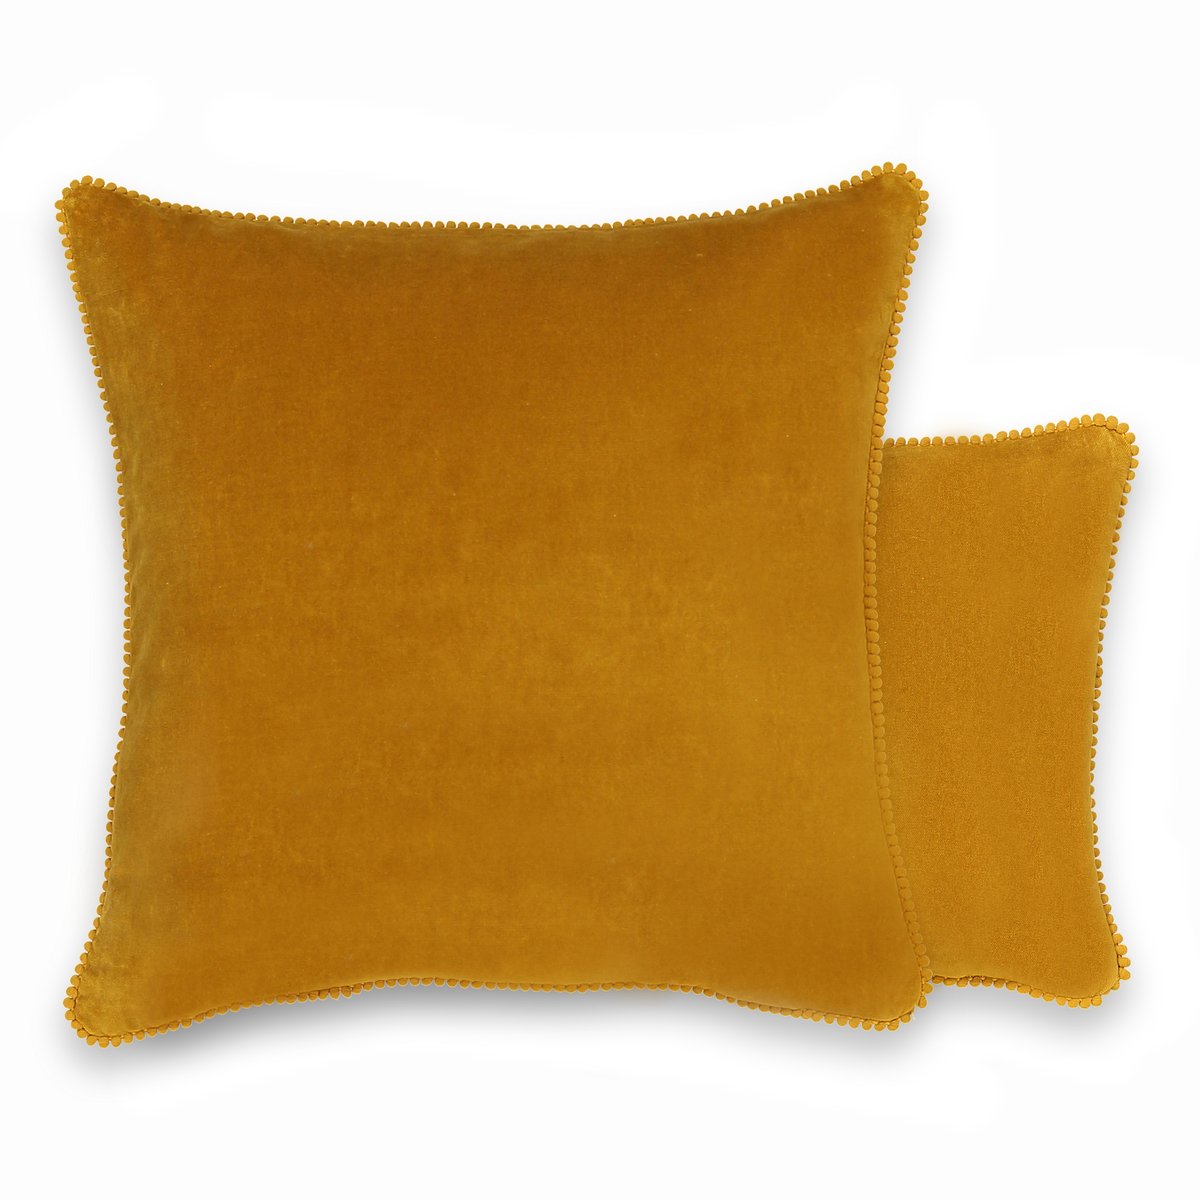 Чехол LaRedoute На подушку из велюра VELVET 50 x 30 см желтый, размер 50 x 30 см - фото 1